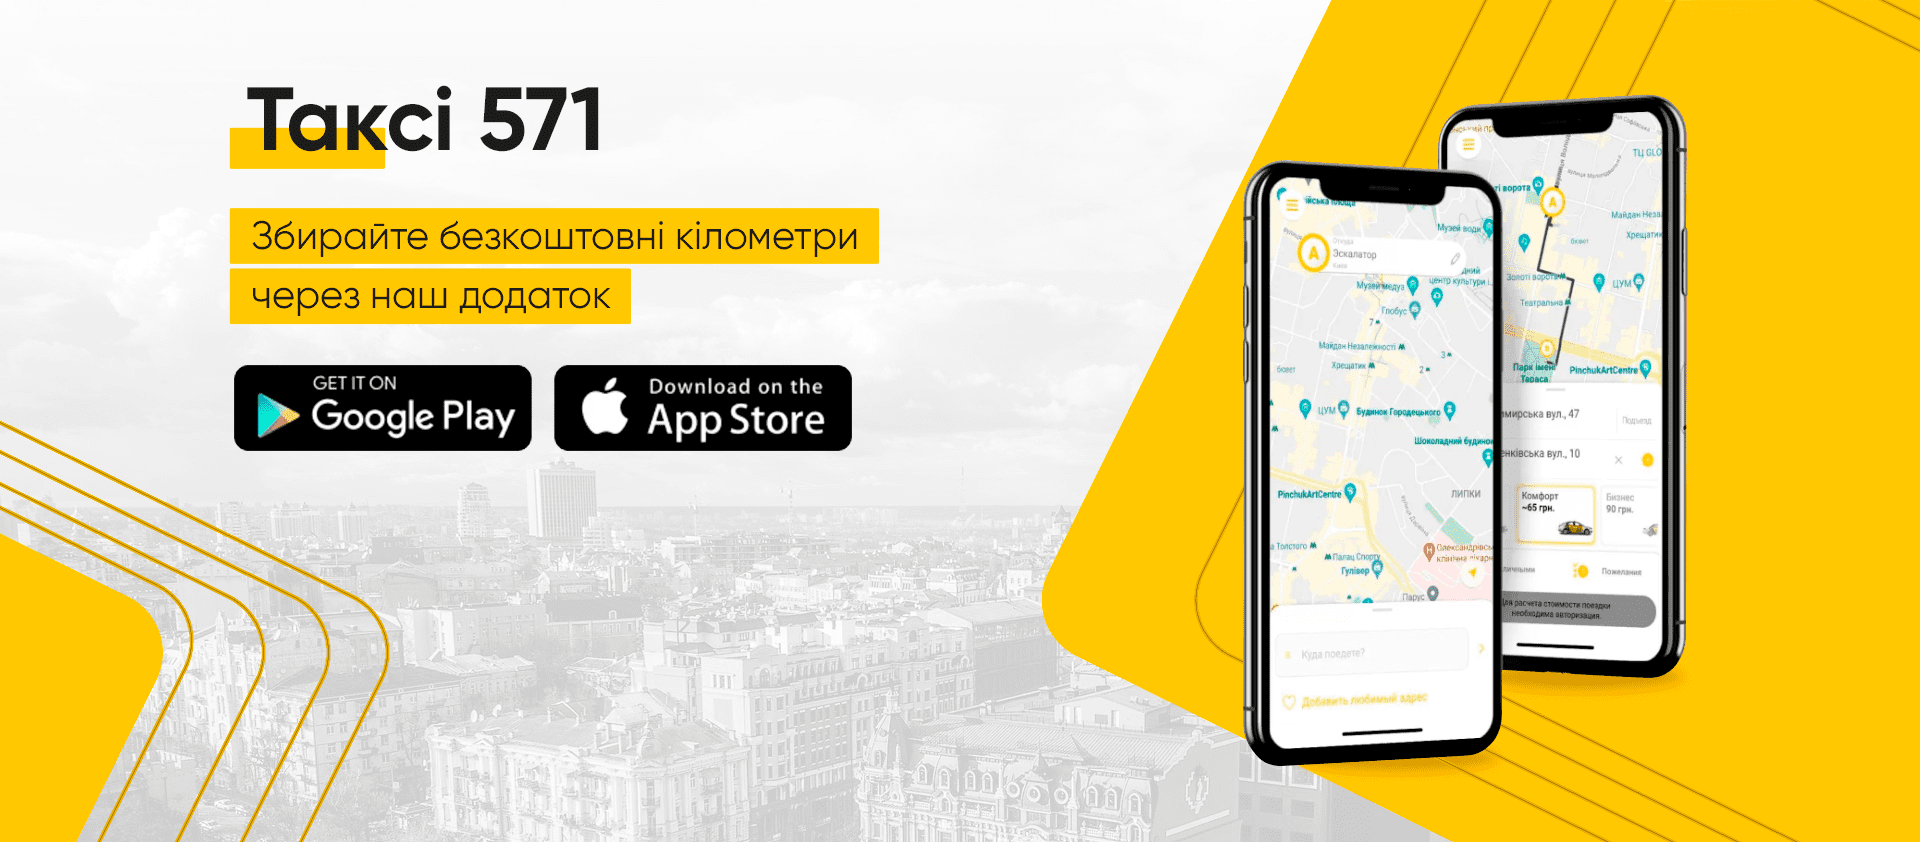 Такси 571 — удобное путешествие по столице